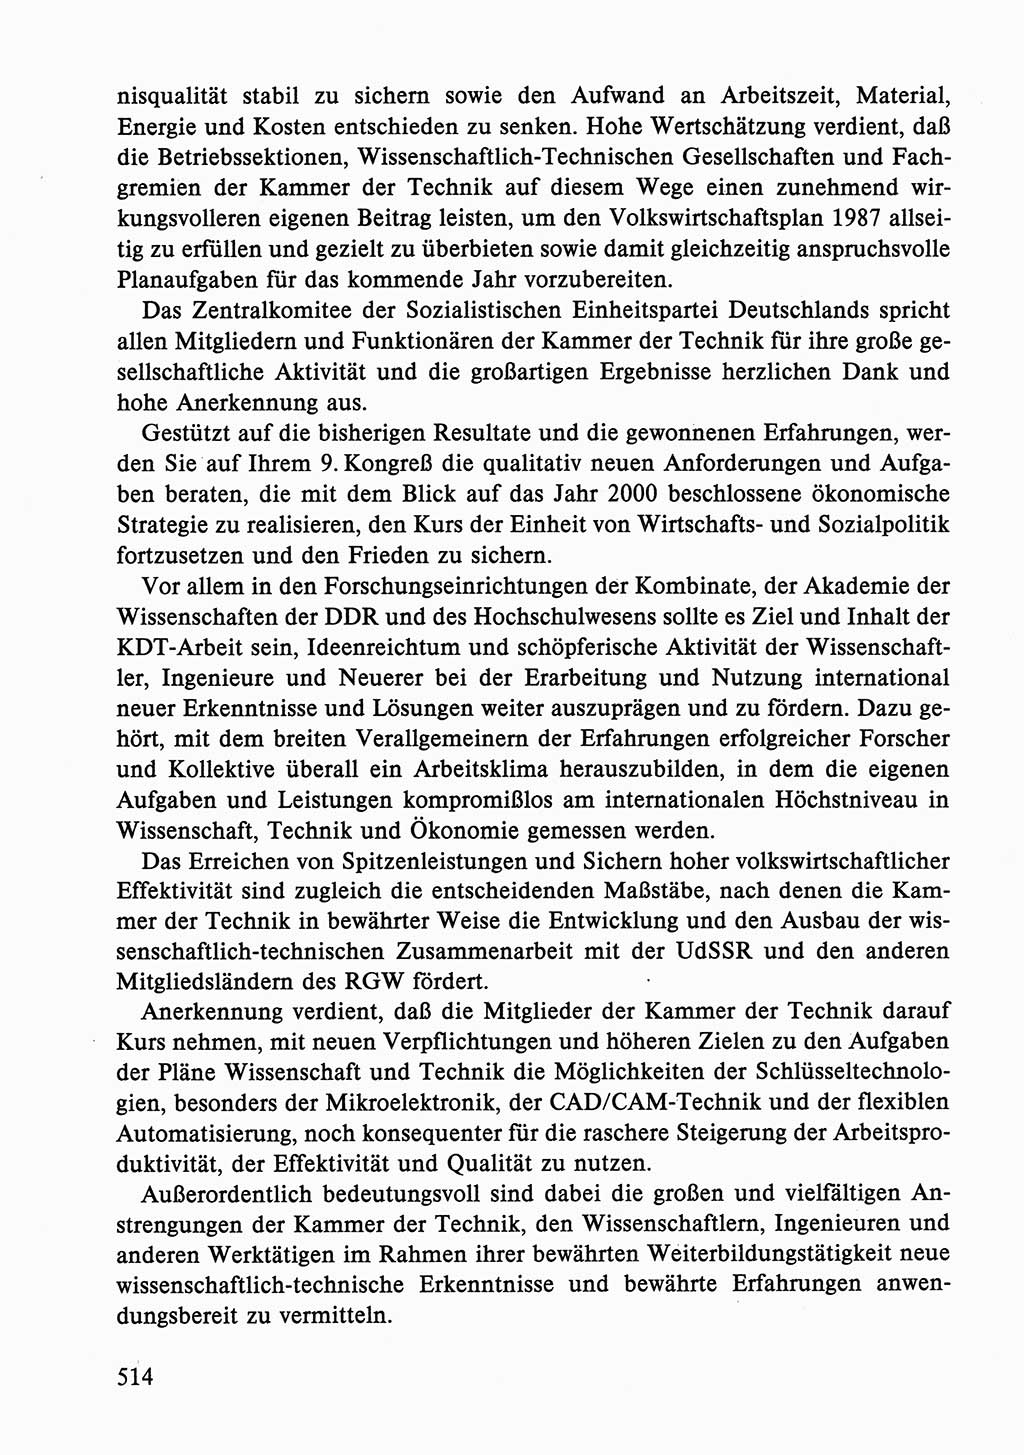 Dokumente der Sozialistischen Einheitspartei Deutschlands (SED) [Deutsche Demokratische Republik (DDR)] 1986-1987, Seite 514 (Dok. SED DDR 1986-1987, S. 514)